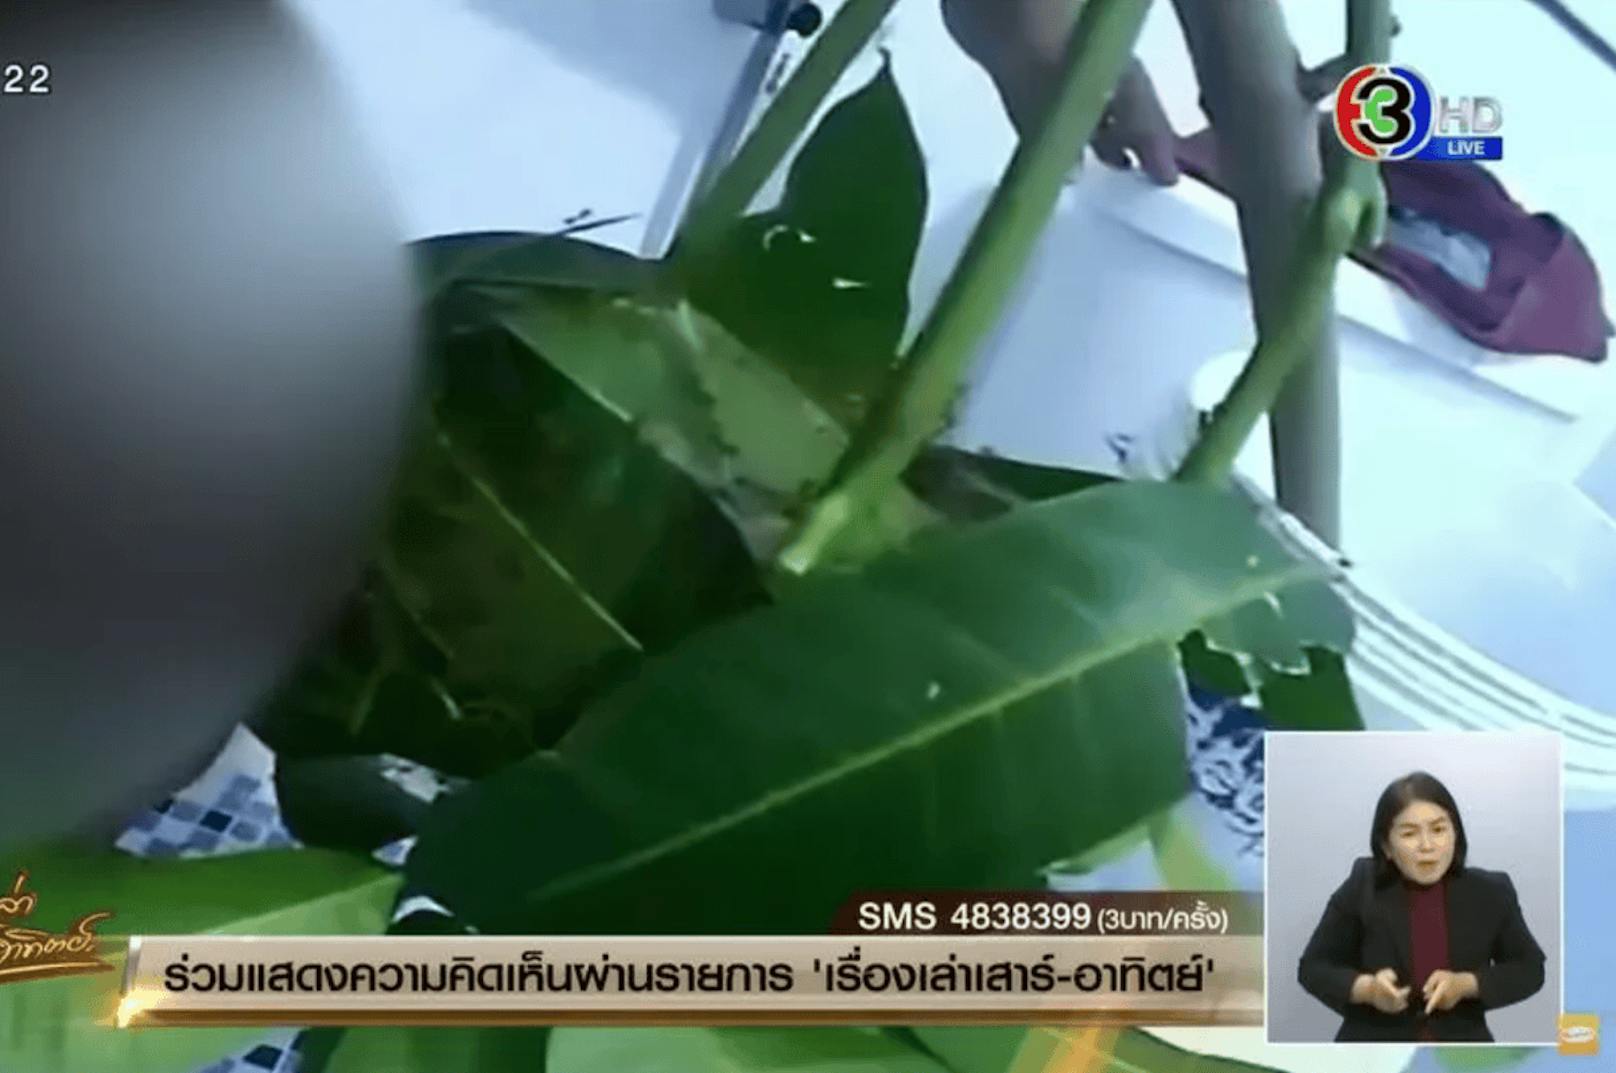 In diese von Ameisen besiedelten Blätter hat ein Mann seinen Penis gesteckt. Dabei filmte er sich auch noch. Thailändischen Medien zufolge soll es zwei Videos geben, die auf Social Media kursieren. (Im Bild: Ausschnitt aus der "Morningshow" von Channel 3 in Thailand)